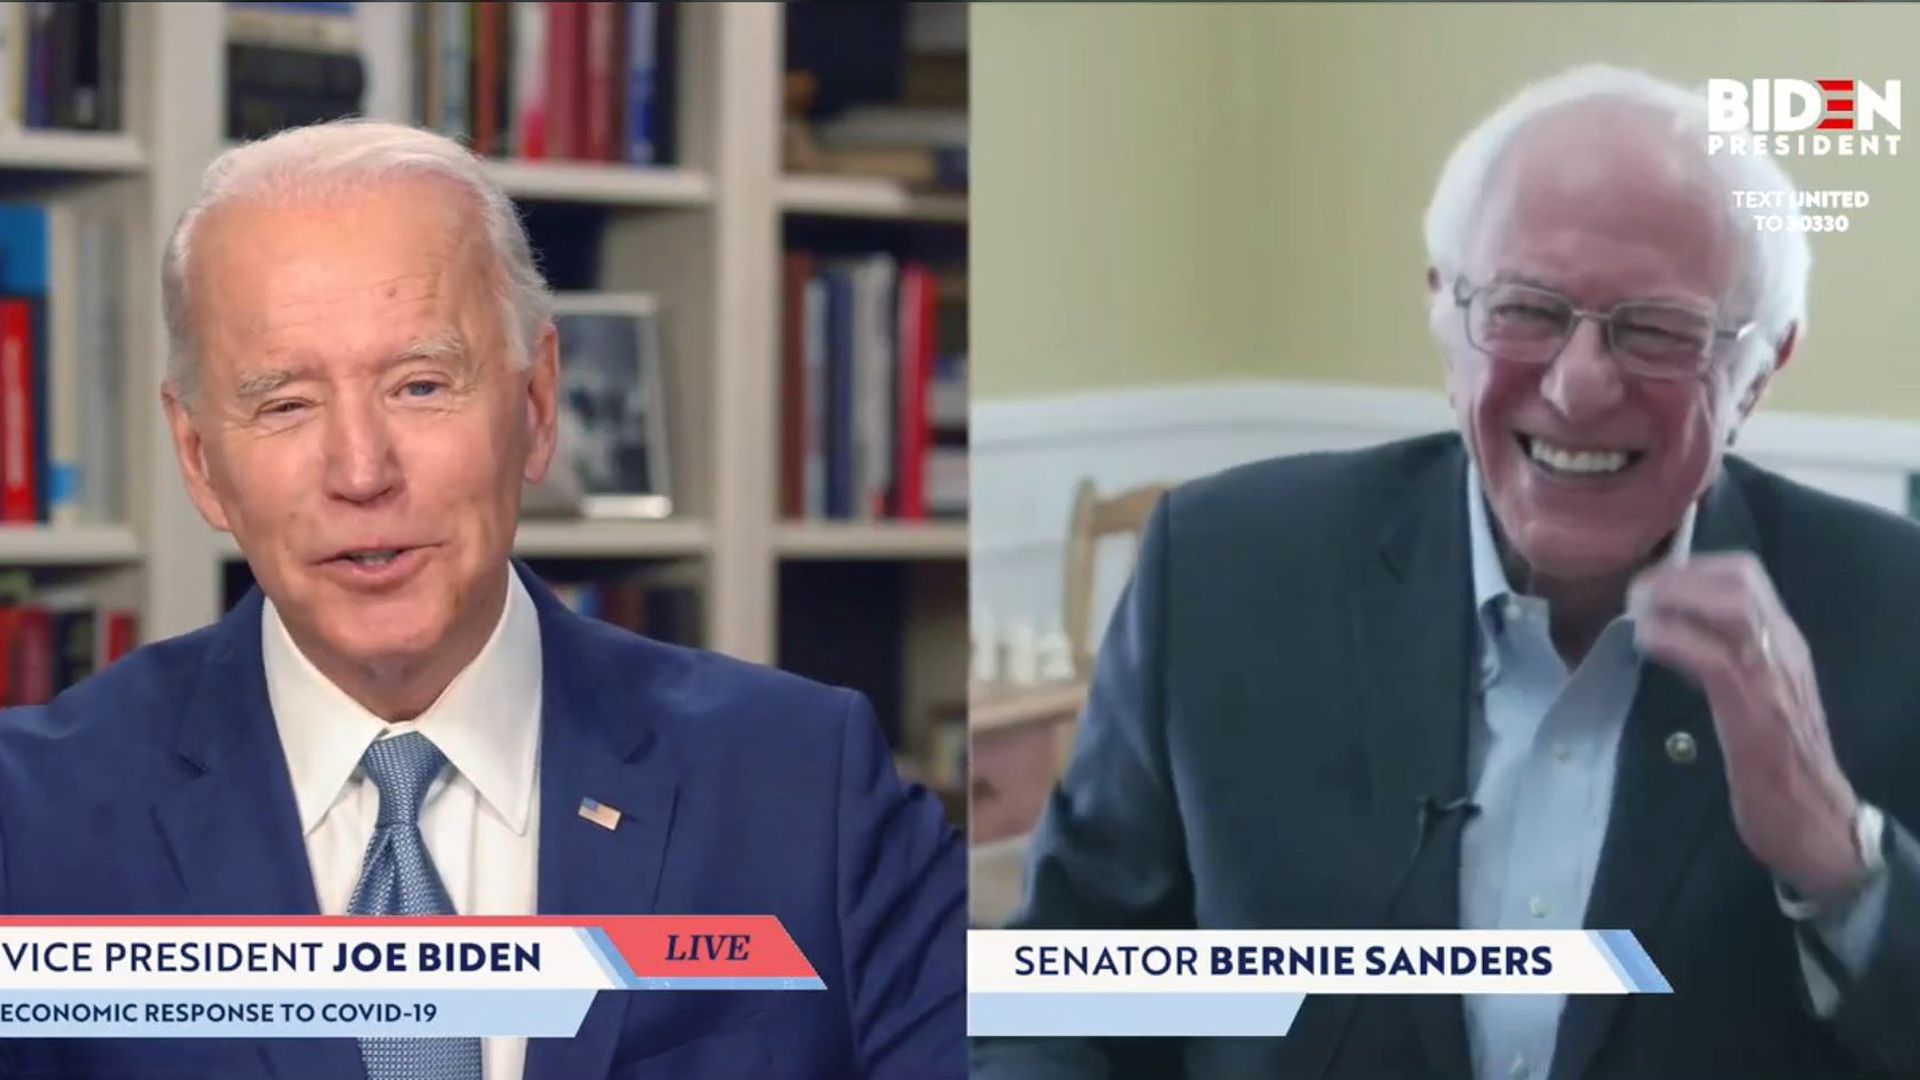 Former Vice President Joe Biden and Senator Bernie Sanders